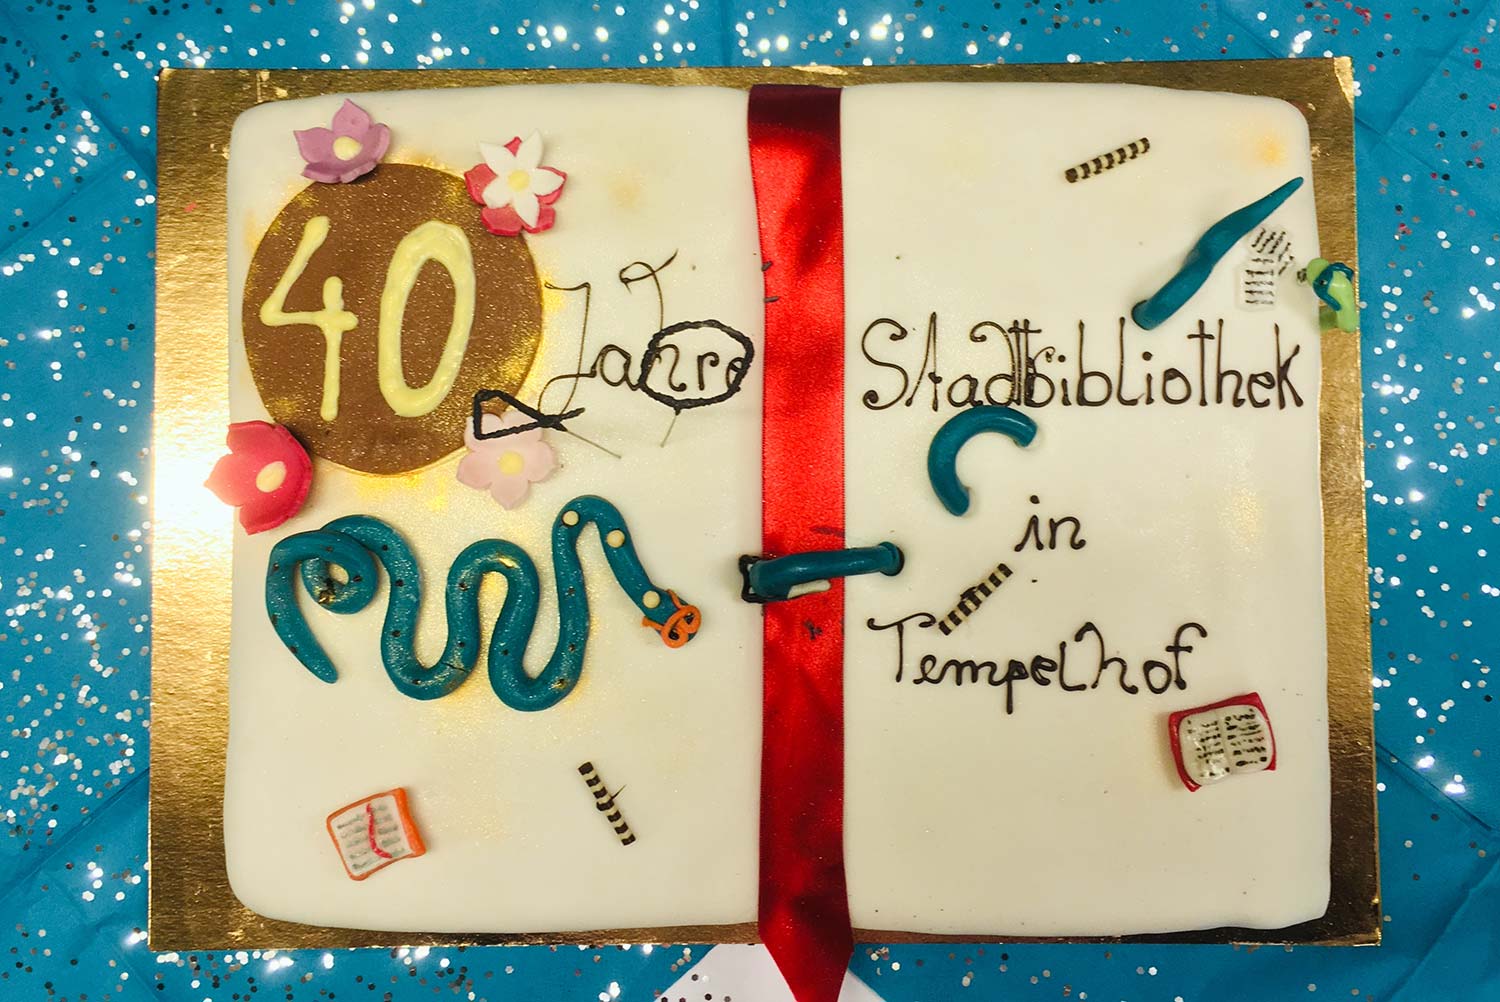 40 Jahre Bezirkszentralbibliothek Tempelhof: Das Café Pausini stiftet die Geburtstagstorte ©K. Schwahlen